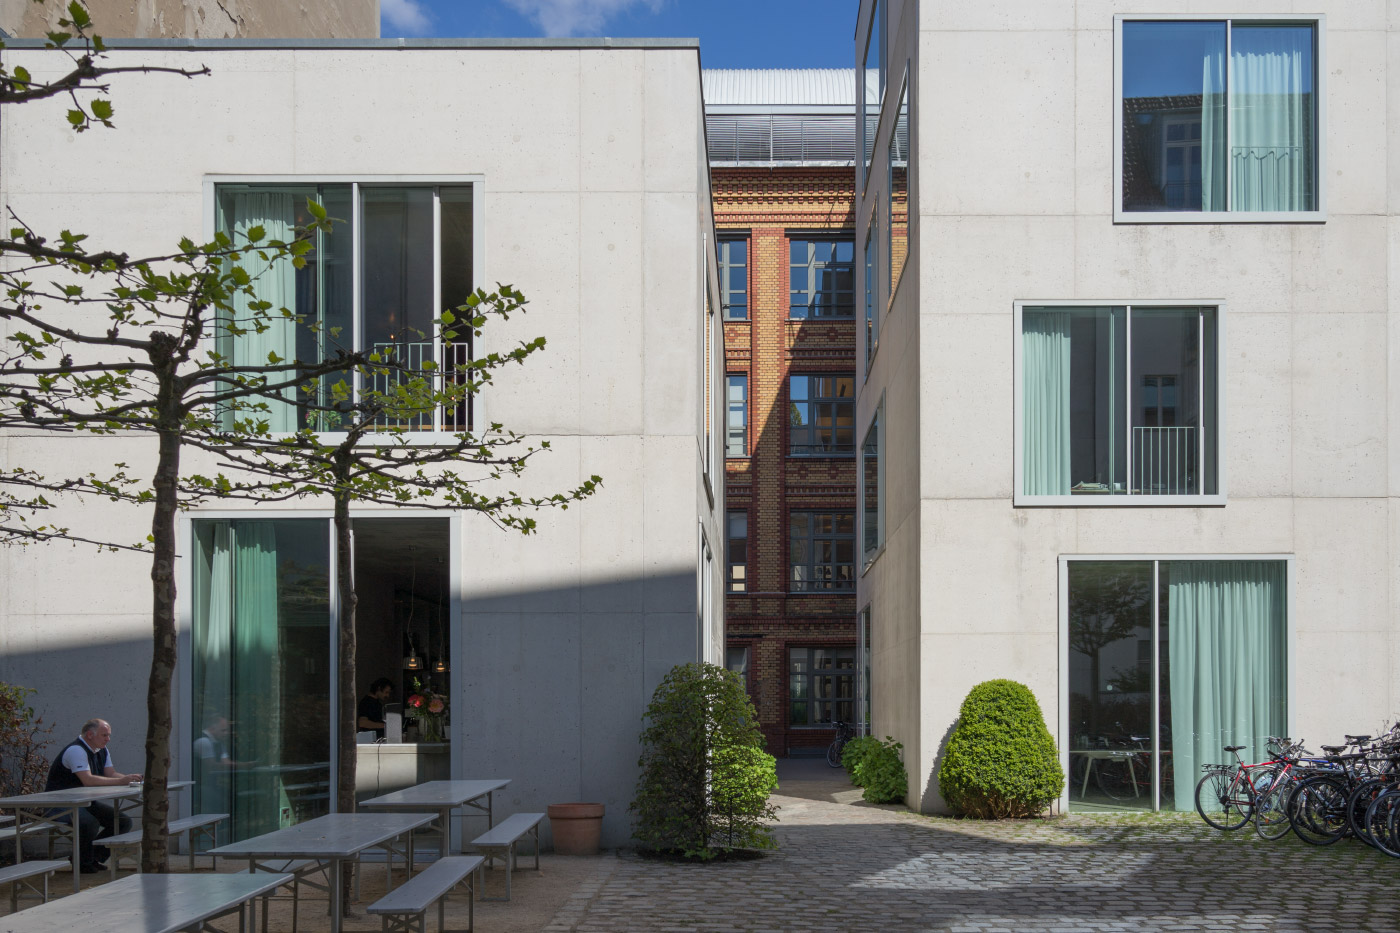 奇普菲尔德的柏林办公室与前面奇普菲尔德设计的康德美术馆对话。